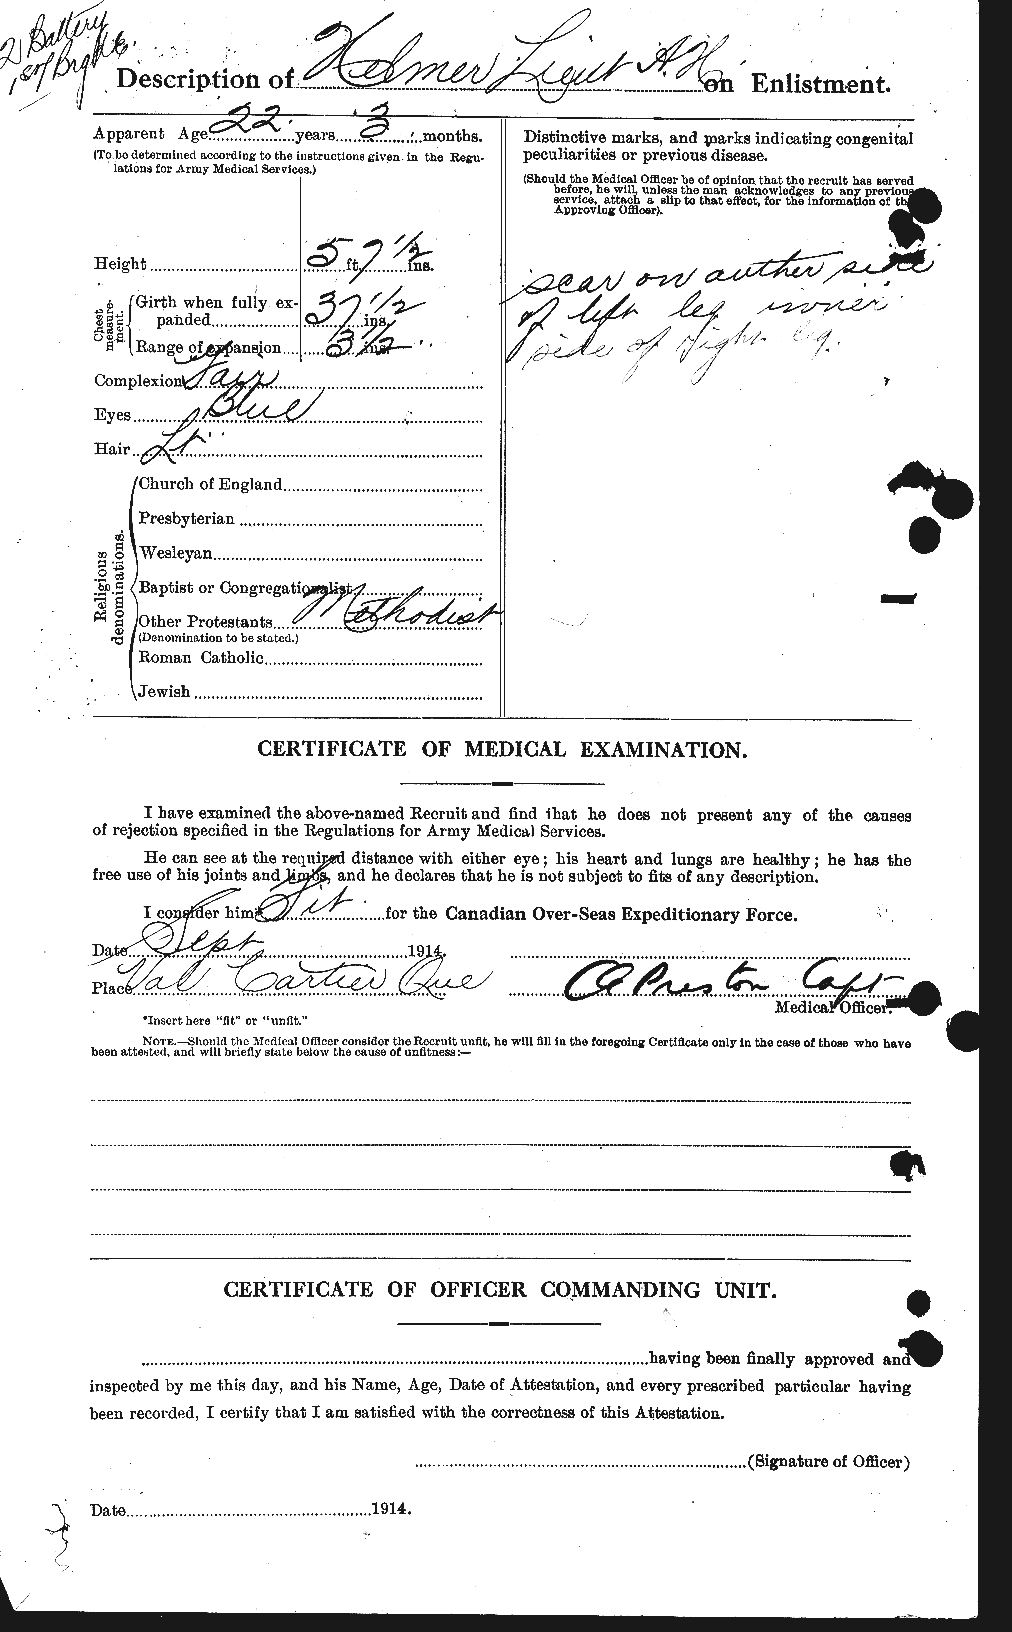 Dossiers du Personnel de la Première Guerre mondiale - CEC 385066b